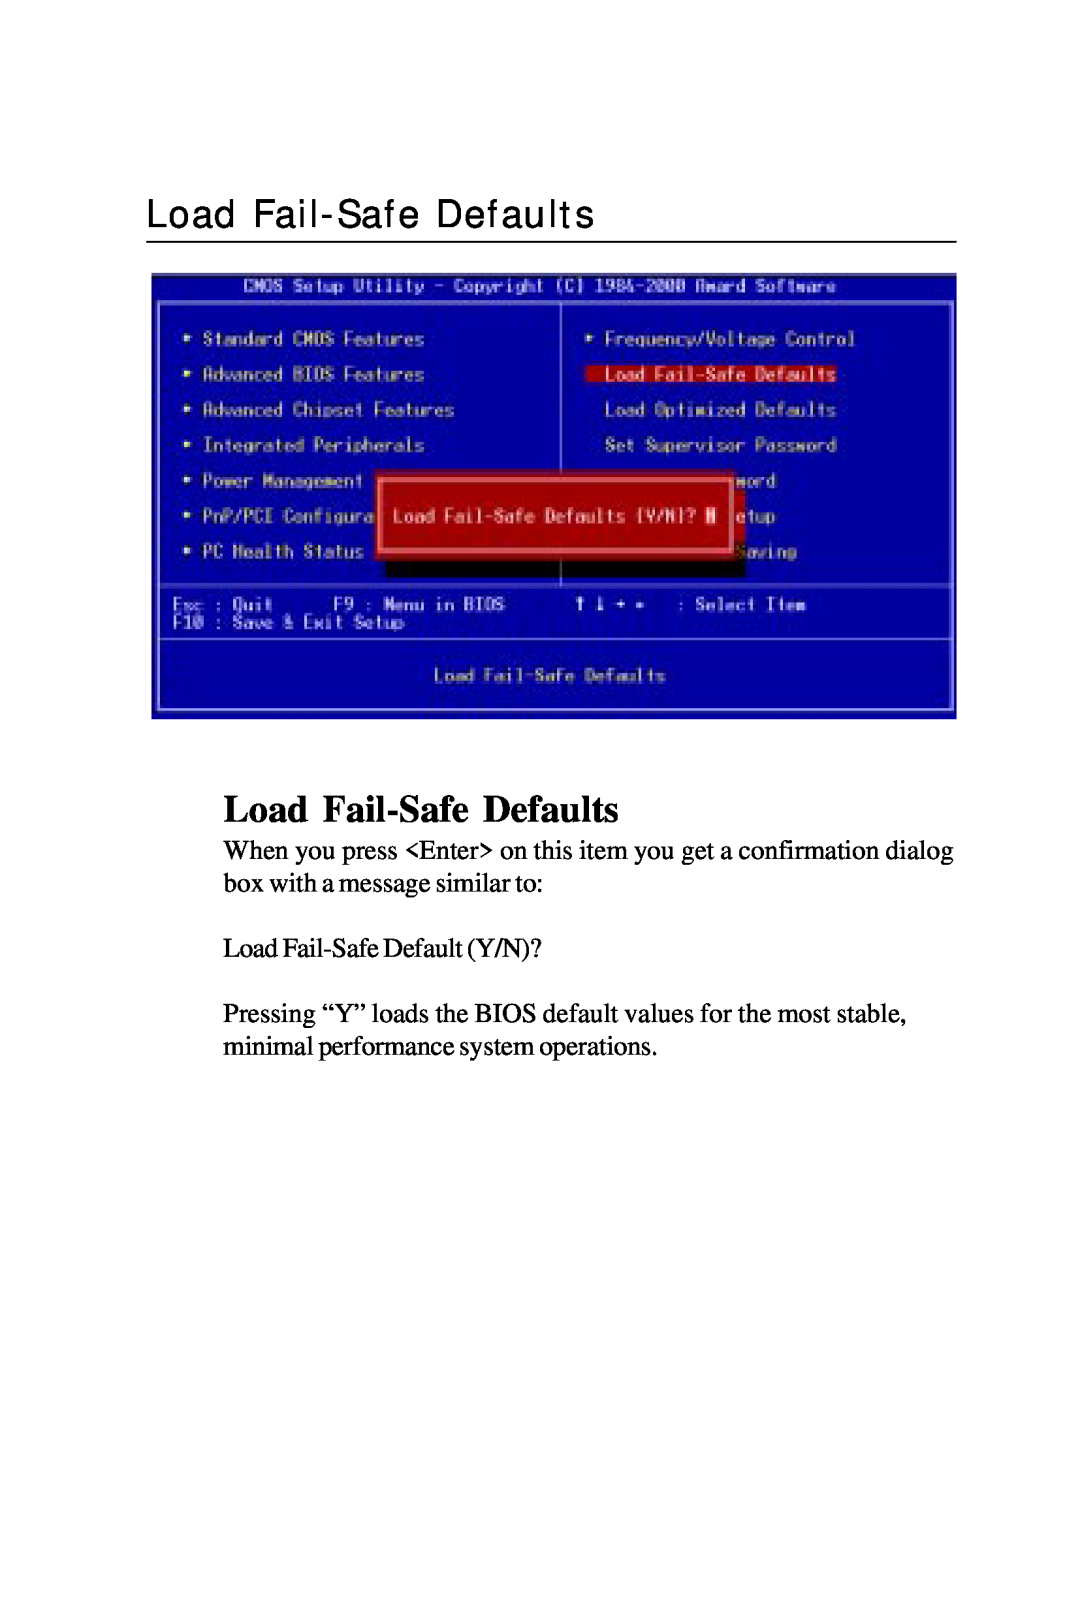 Intel PCM-6896 manual Load Fail-Safe Defaults 